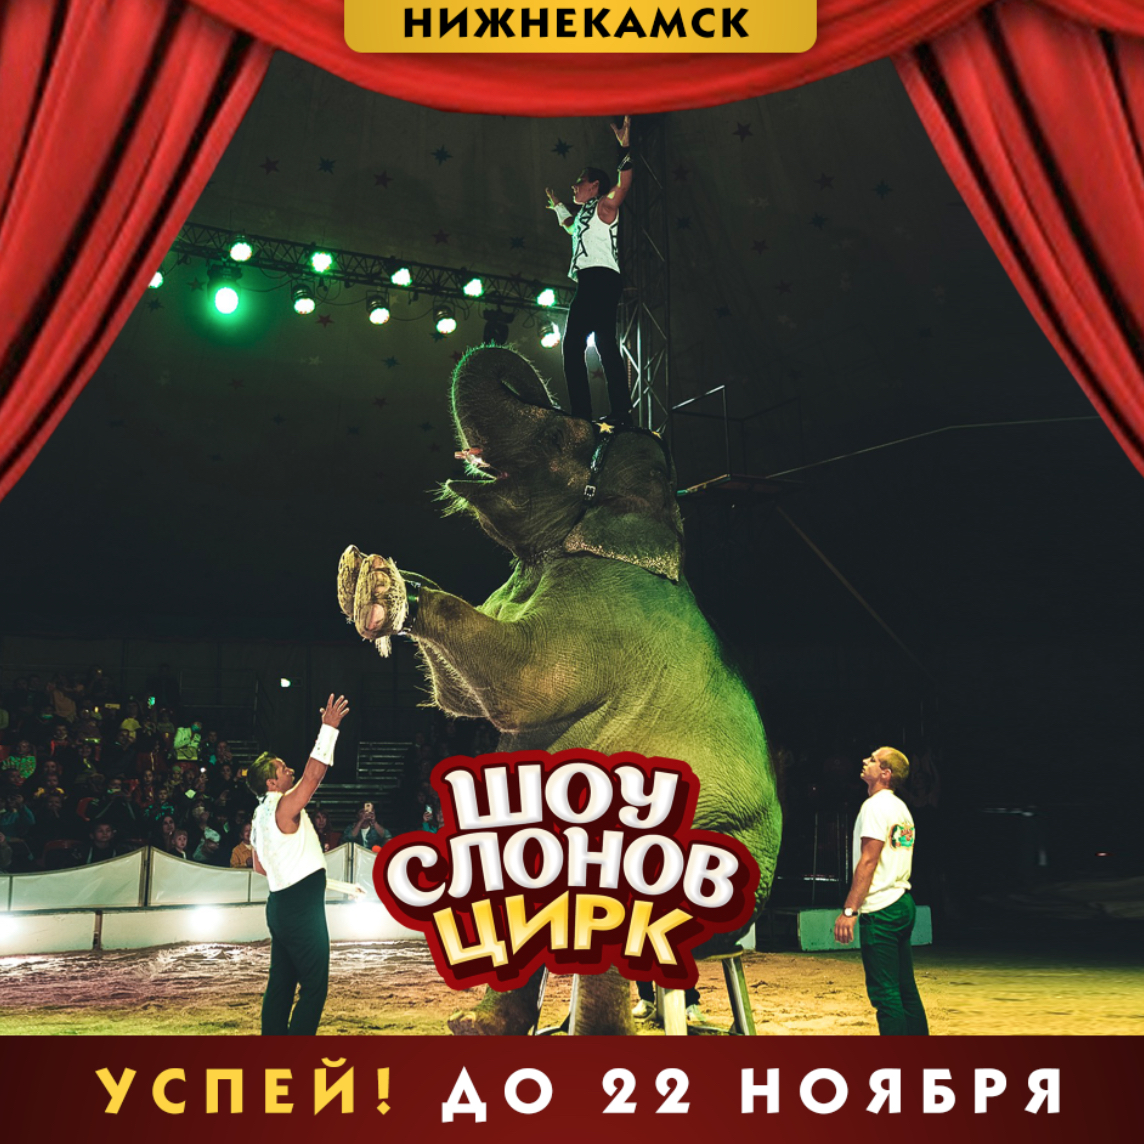 Цирк шоу слонов братьев Гертнер в Нижнекамске с 7 ноября 2020